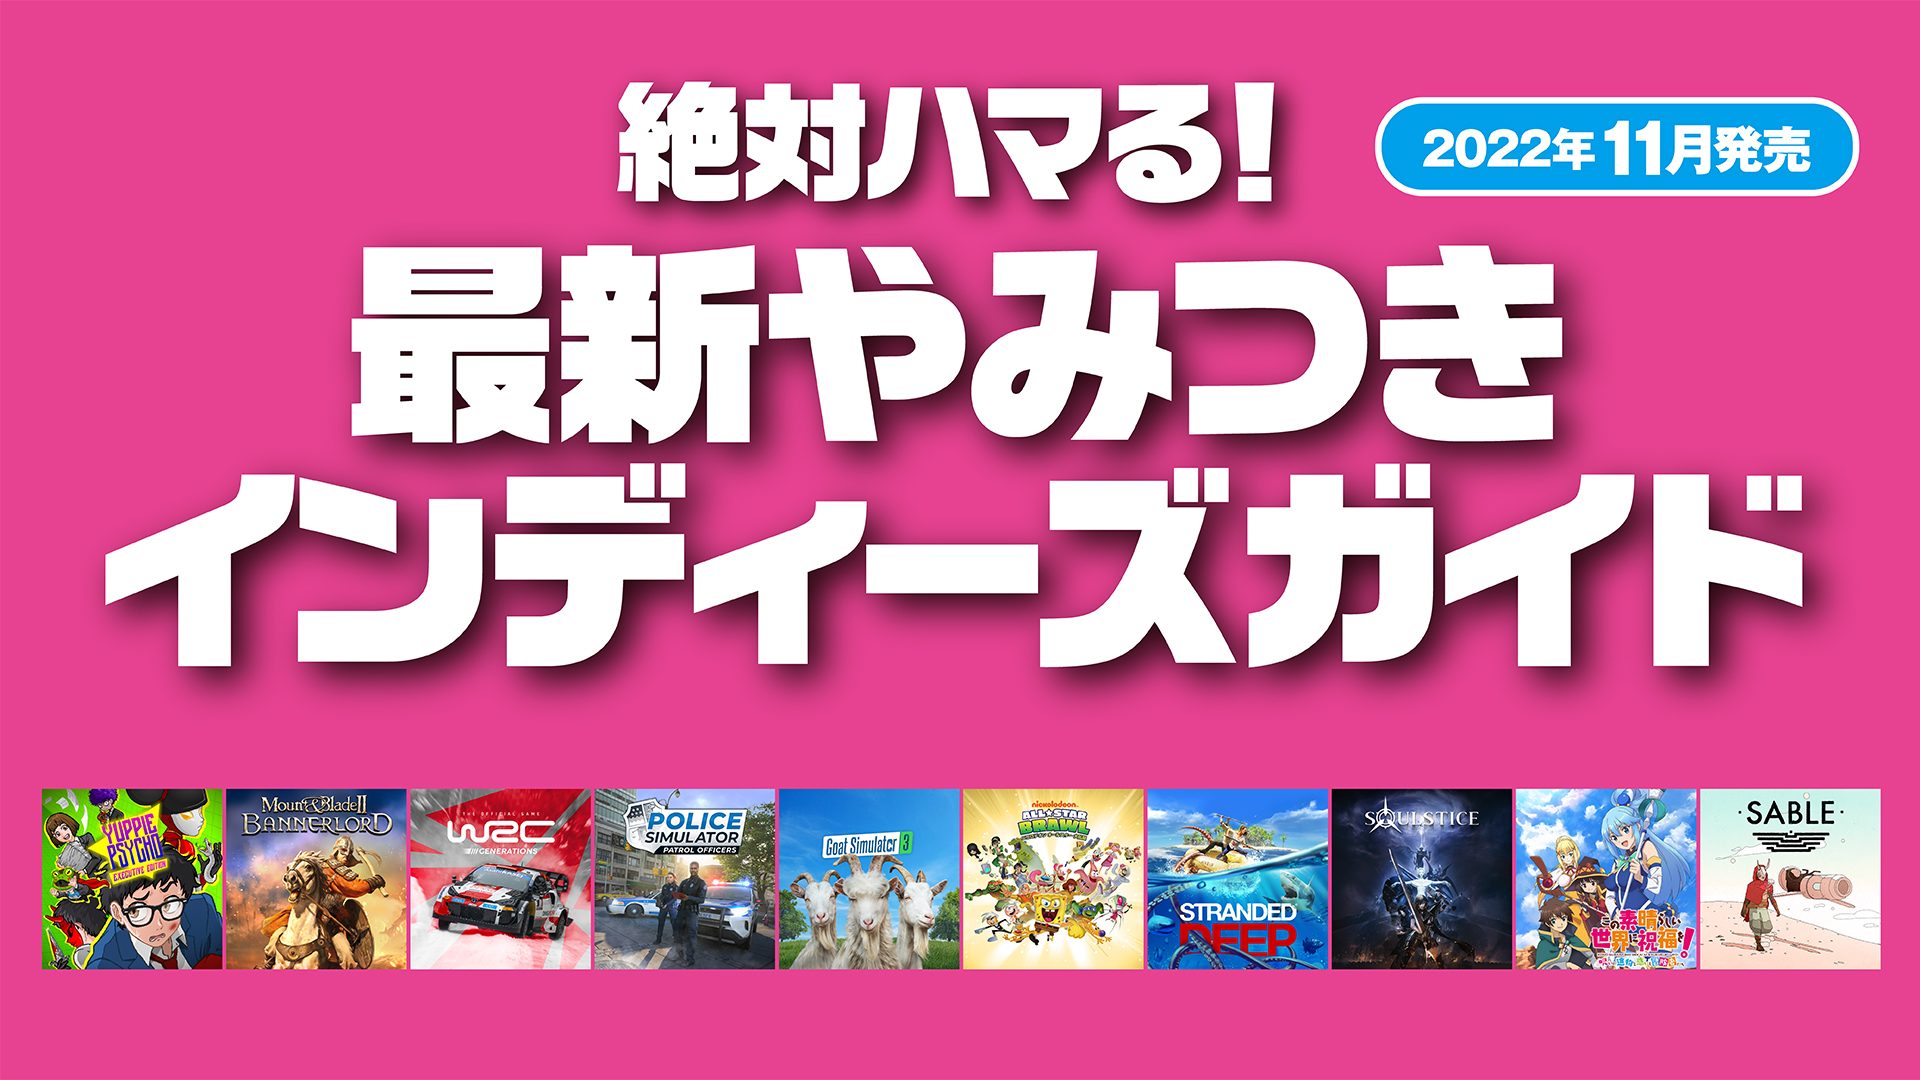 絶対ハマる 最新やみつきインディーズガイド 22年11月発売 Playstation Blog 日本語